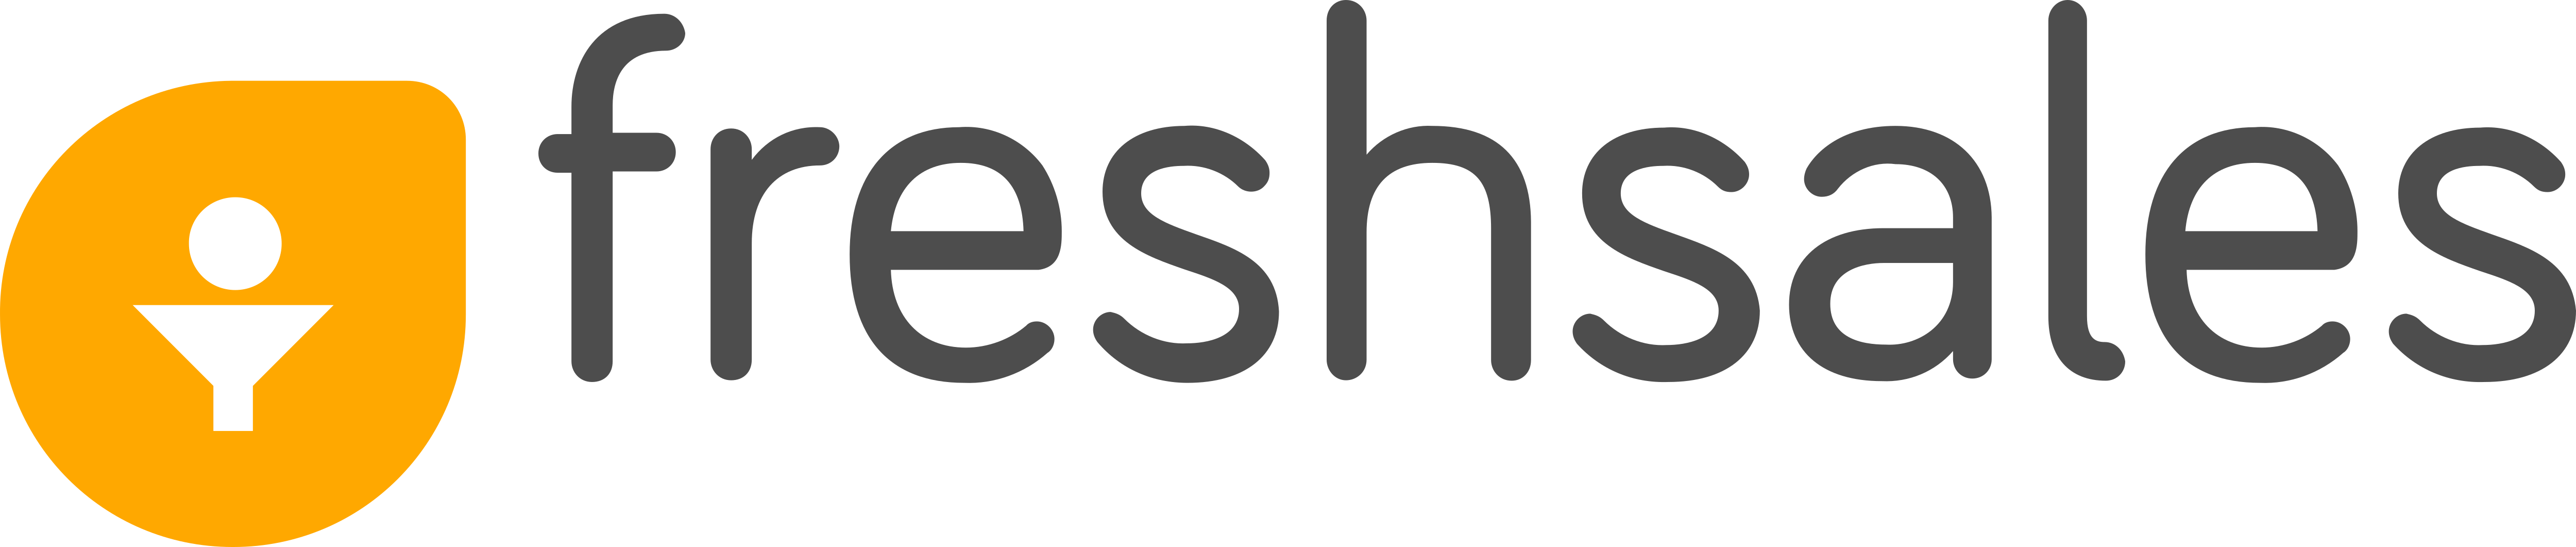 Freshsales – Logos Download